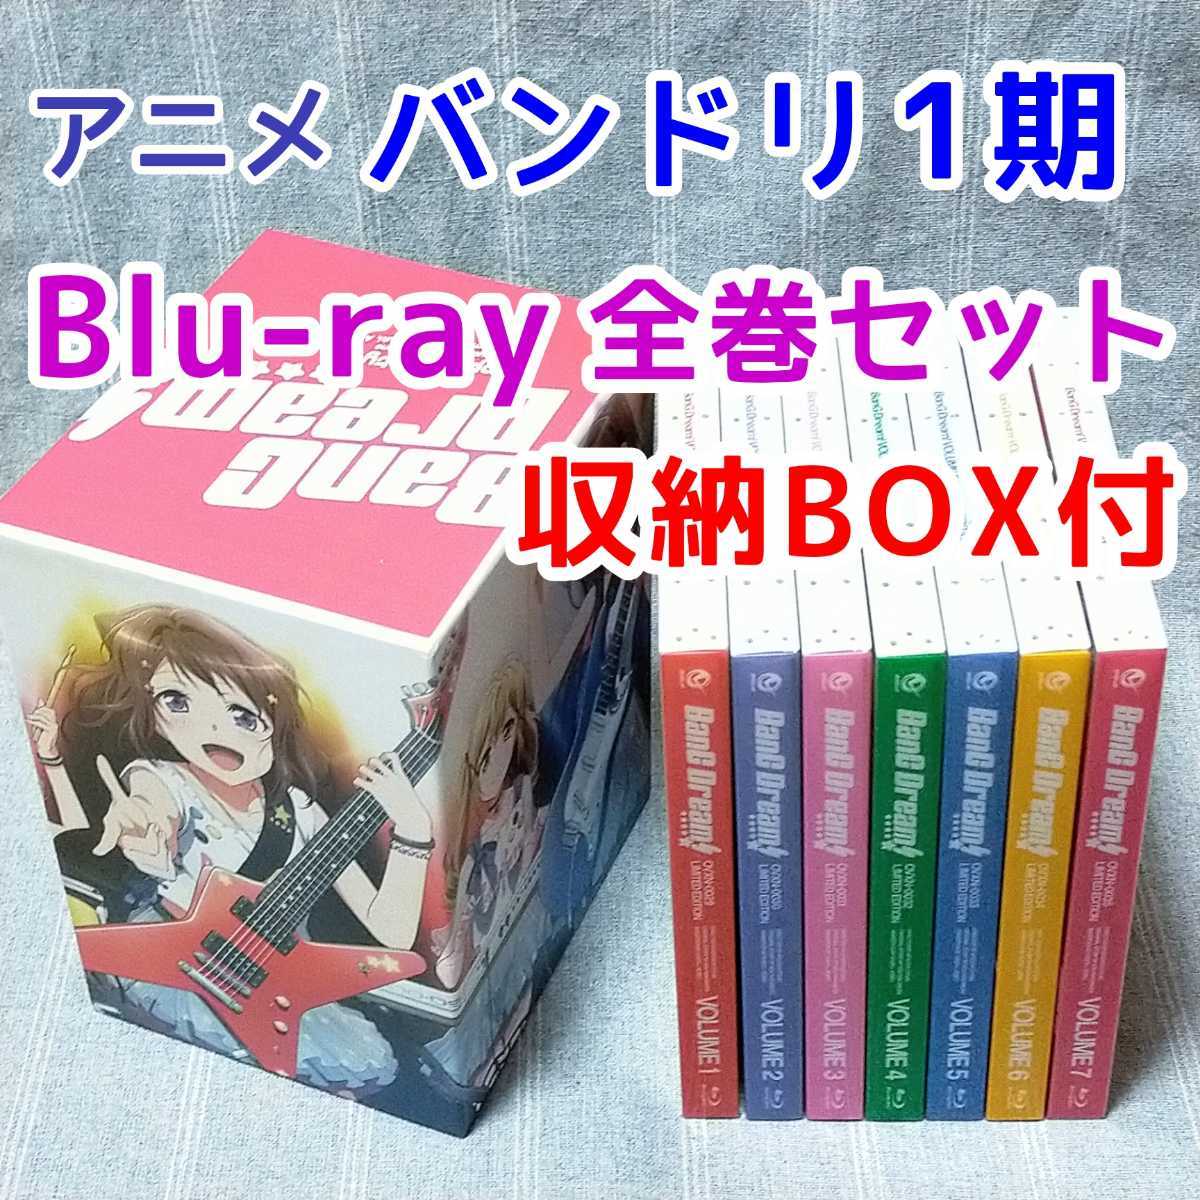 全日本送料無料 あずまんが大王 Disc)(初回限定版) BOX(Blu-ray Blu